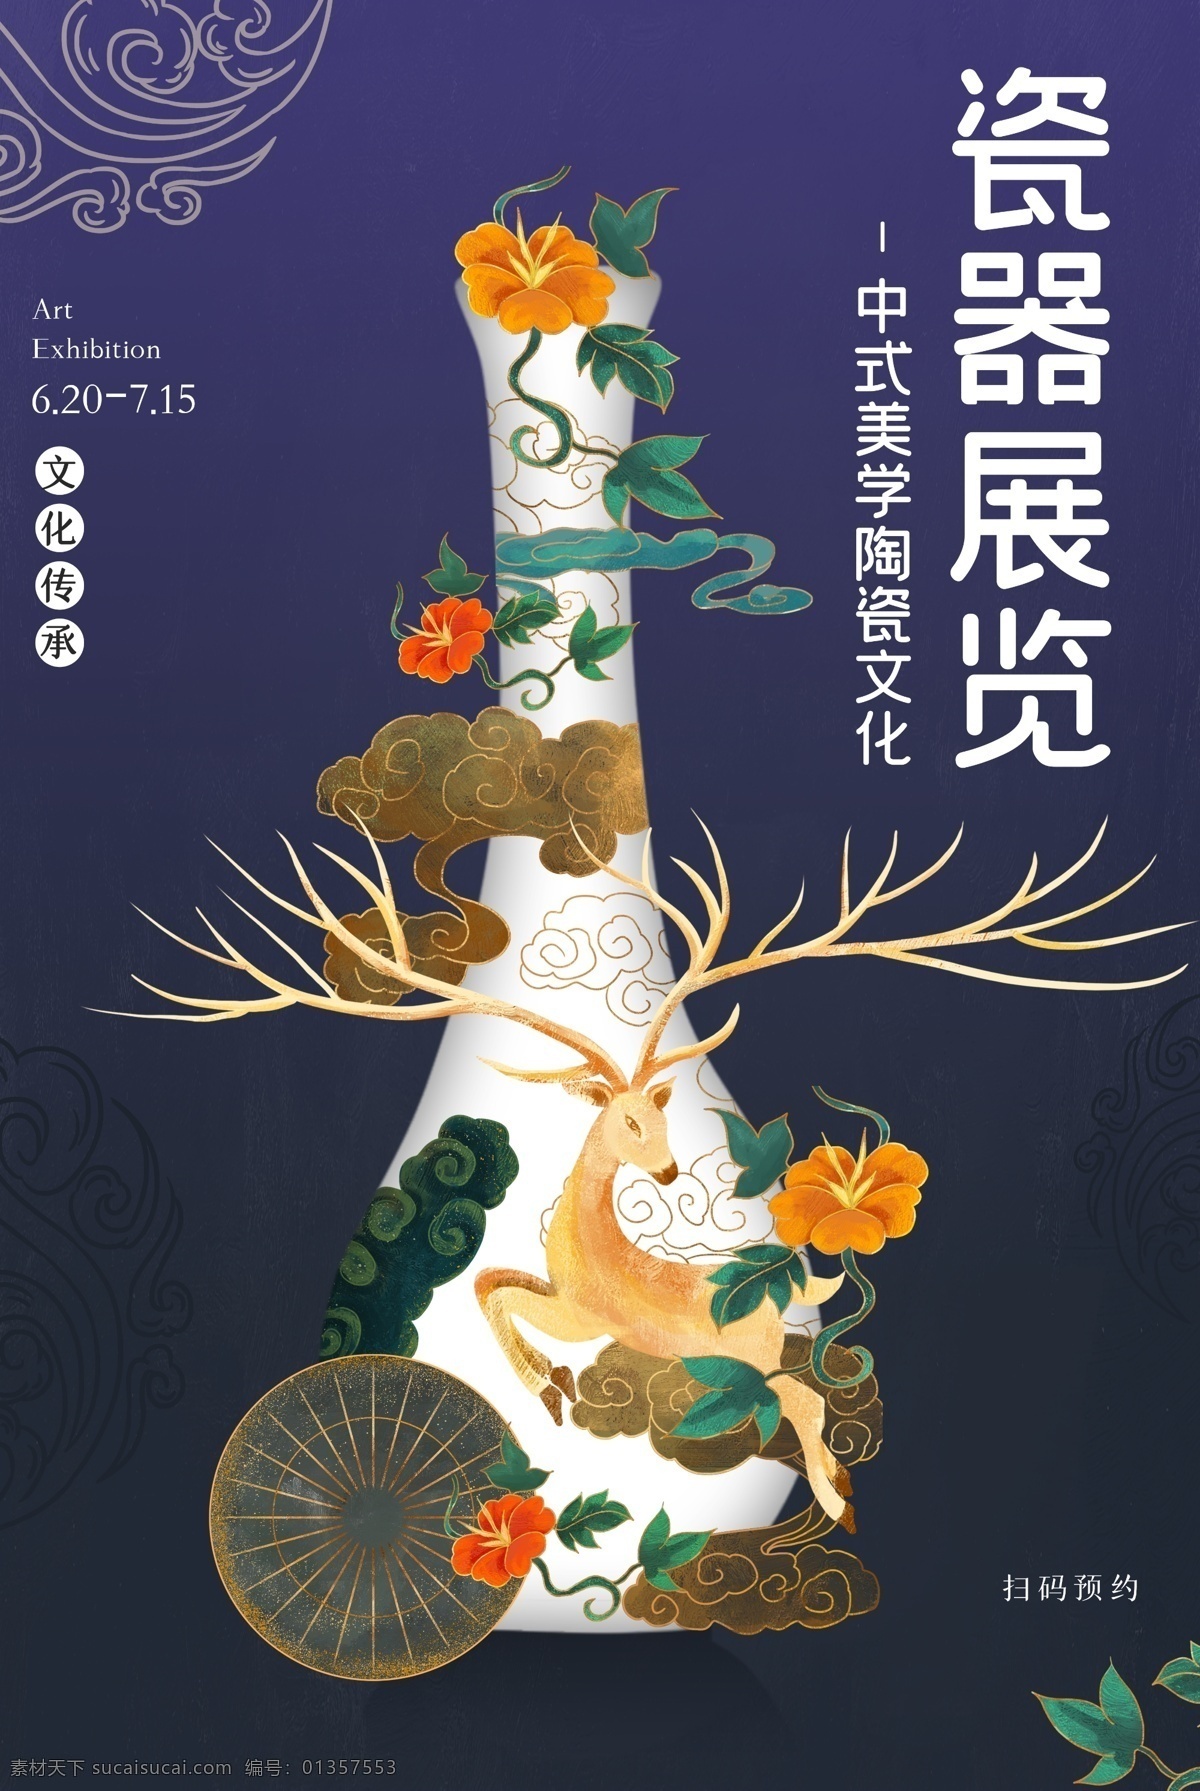 瓷器 展览 古风 传统 复古 中国 风 海报 中国风